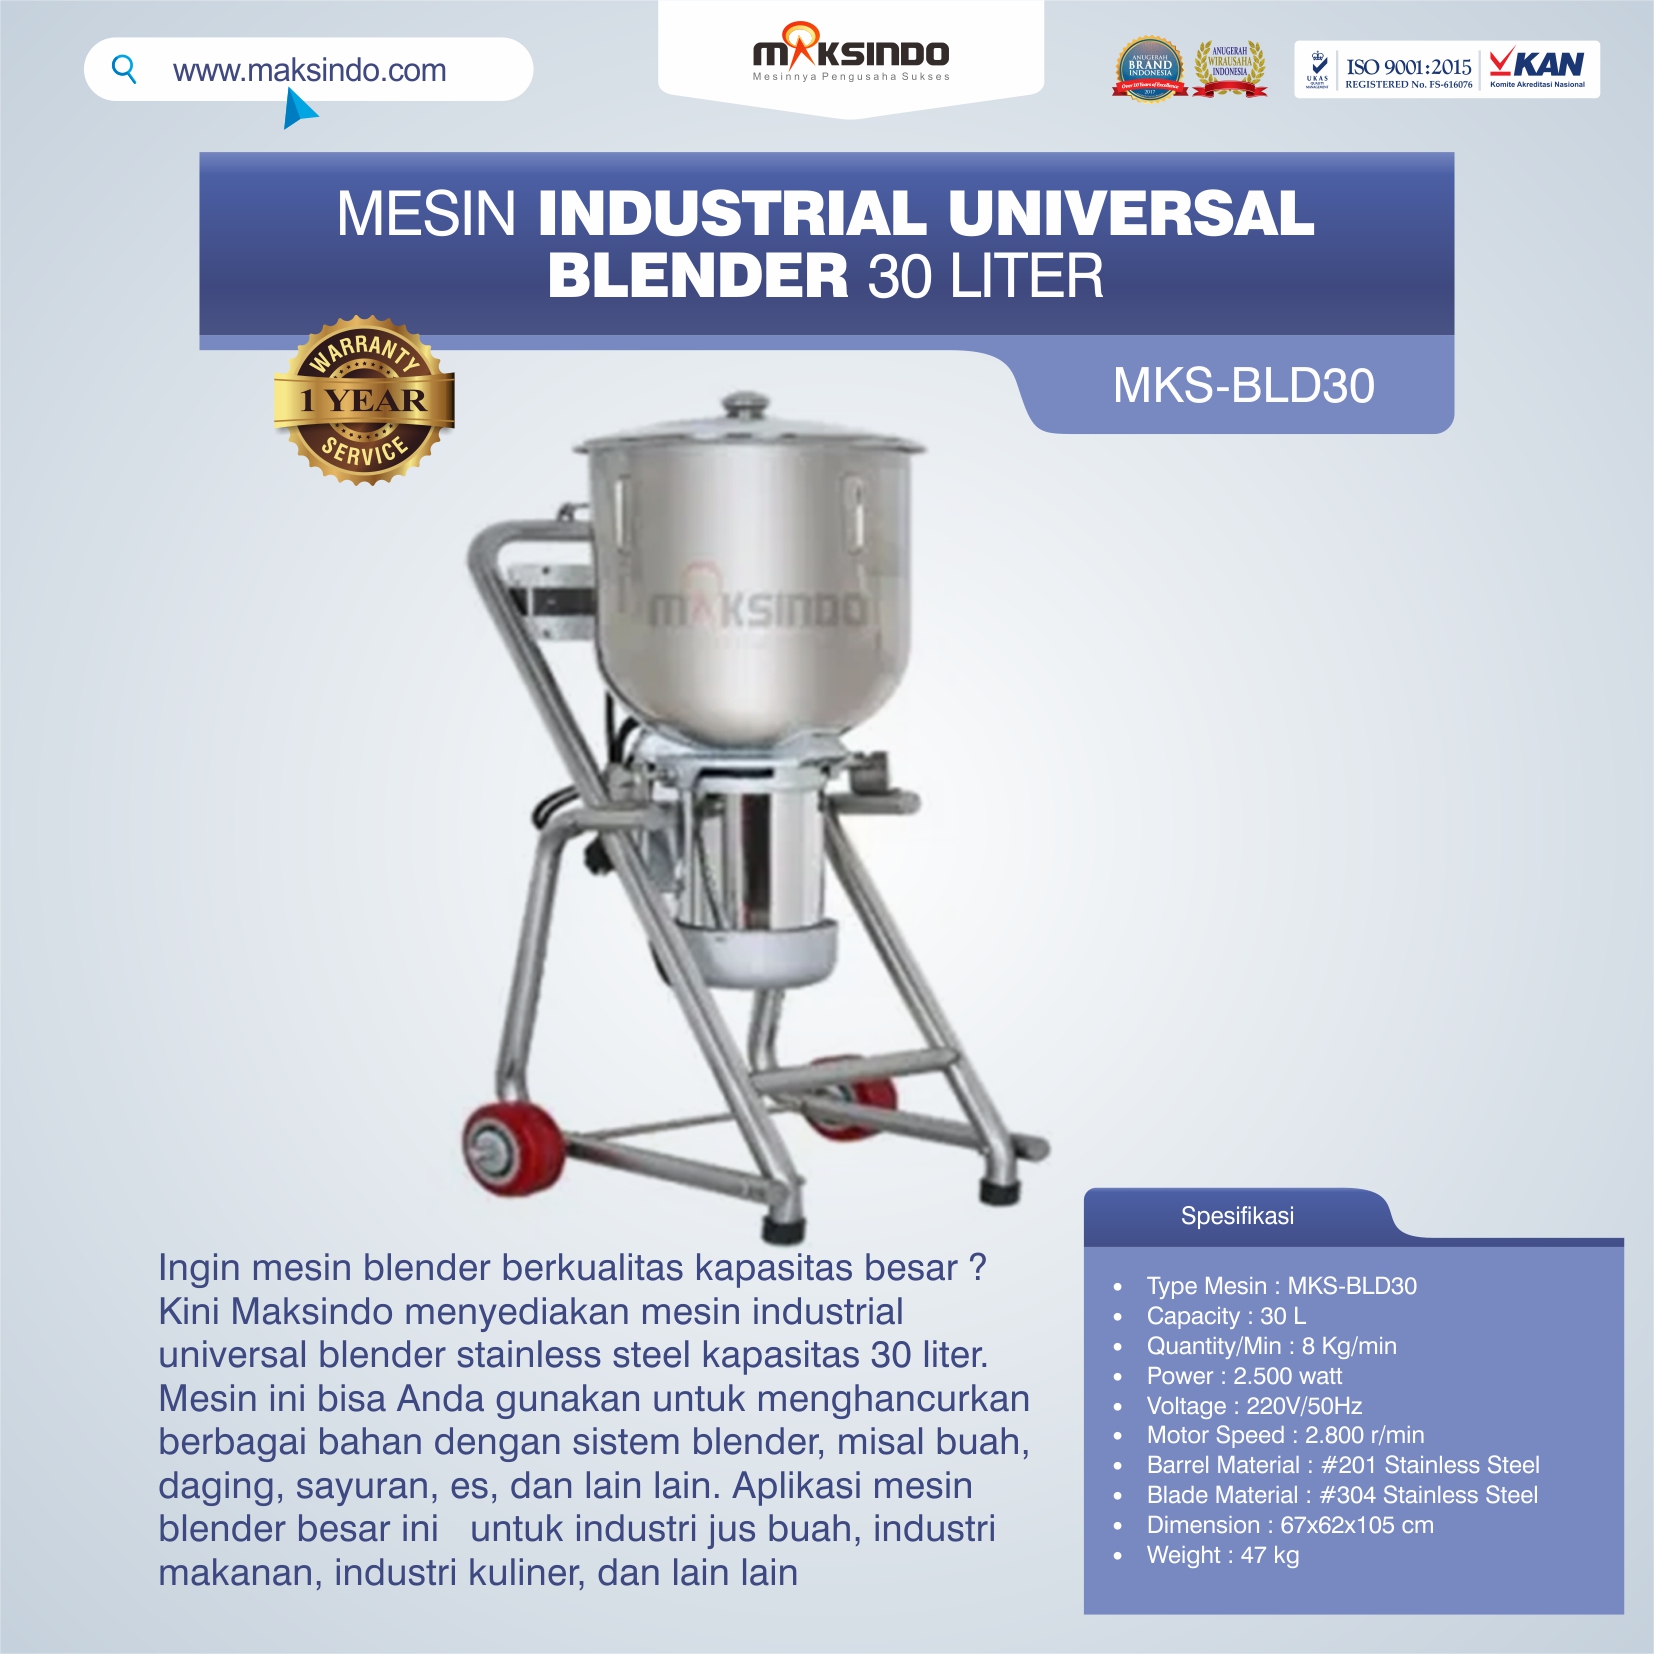 Jual Industrial Universal Blender 30 Liter MKS-BLD30 di Bandung